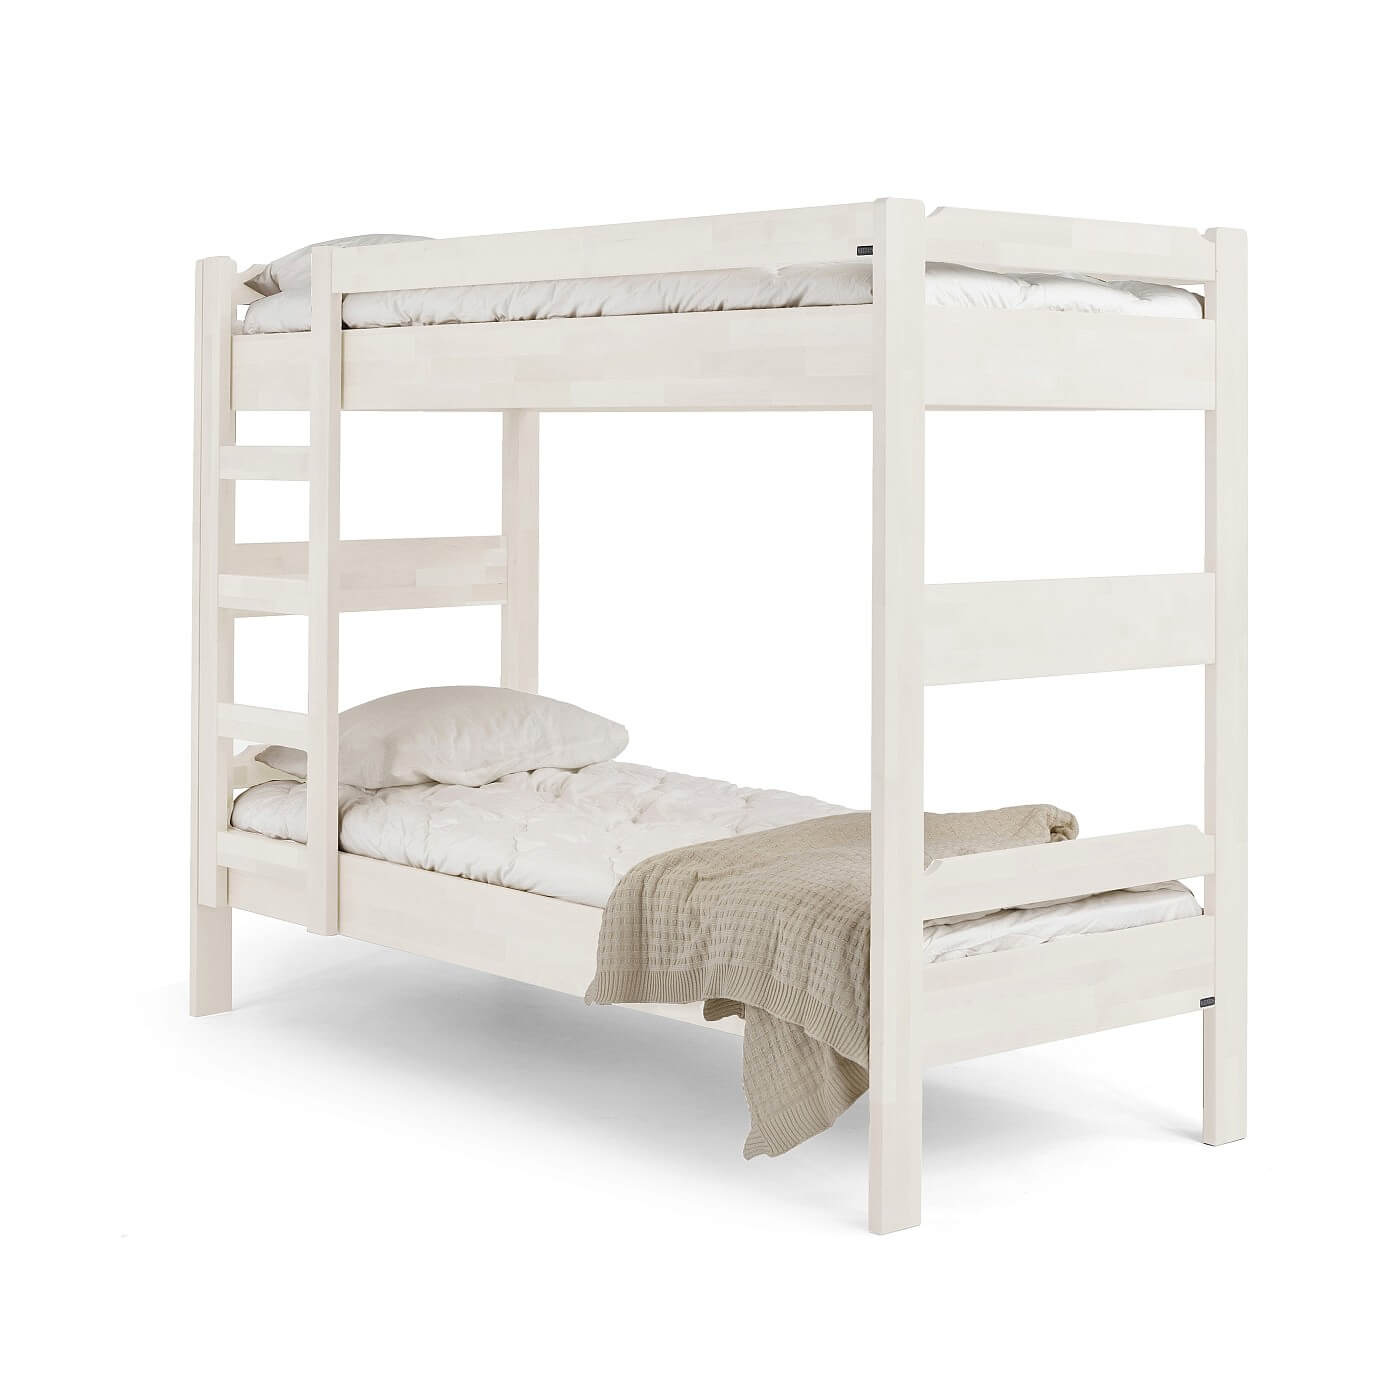 Łóżko piętrowe białe KUUSAMO z materacami 80x200, białą pościelą i beżowym kocem. Solidne łóżko dwupiętrowe z litego drewna brzozy skandynawskiej lakierowanej na kolor biały matowy widoczne w całości. Skandynawski design